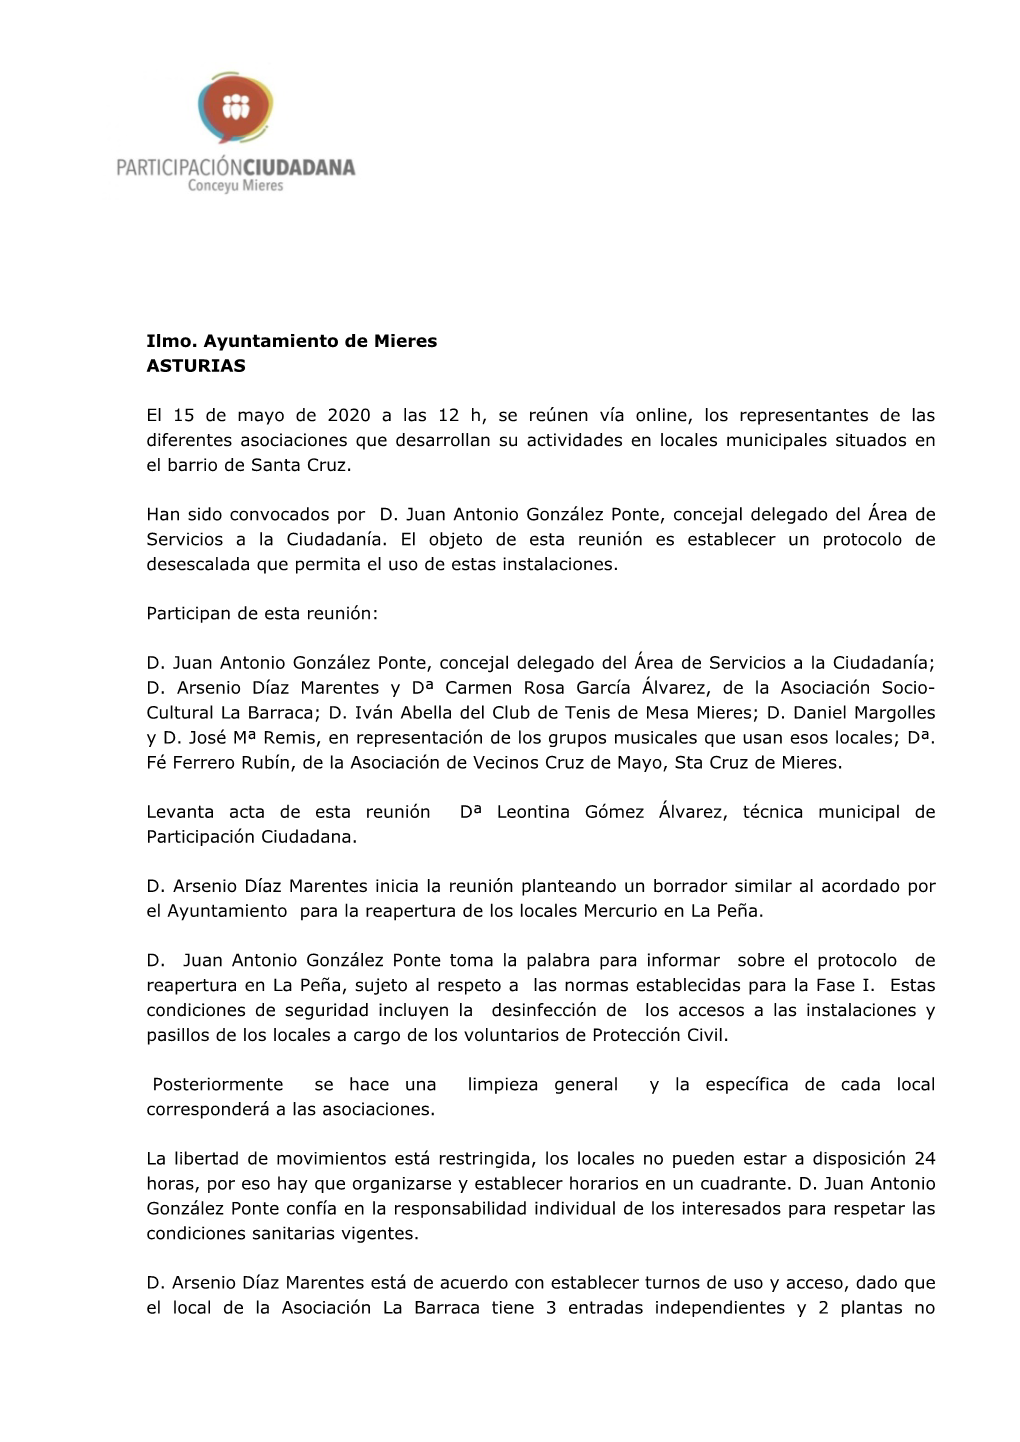 Ilmo. Ayuntamiento De Mieres ASTURIAS El 15 De Mayo De 2020